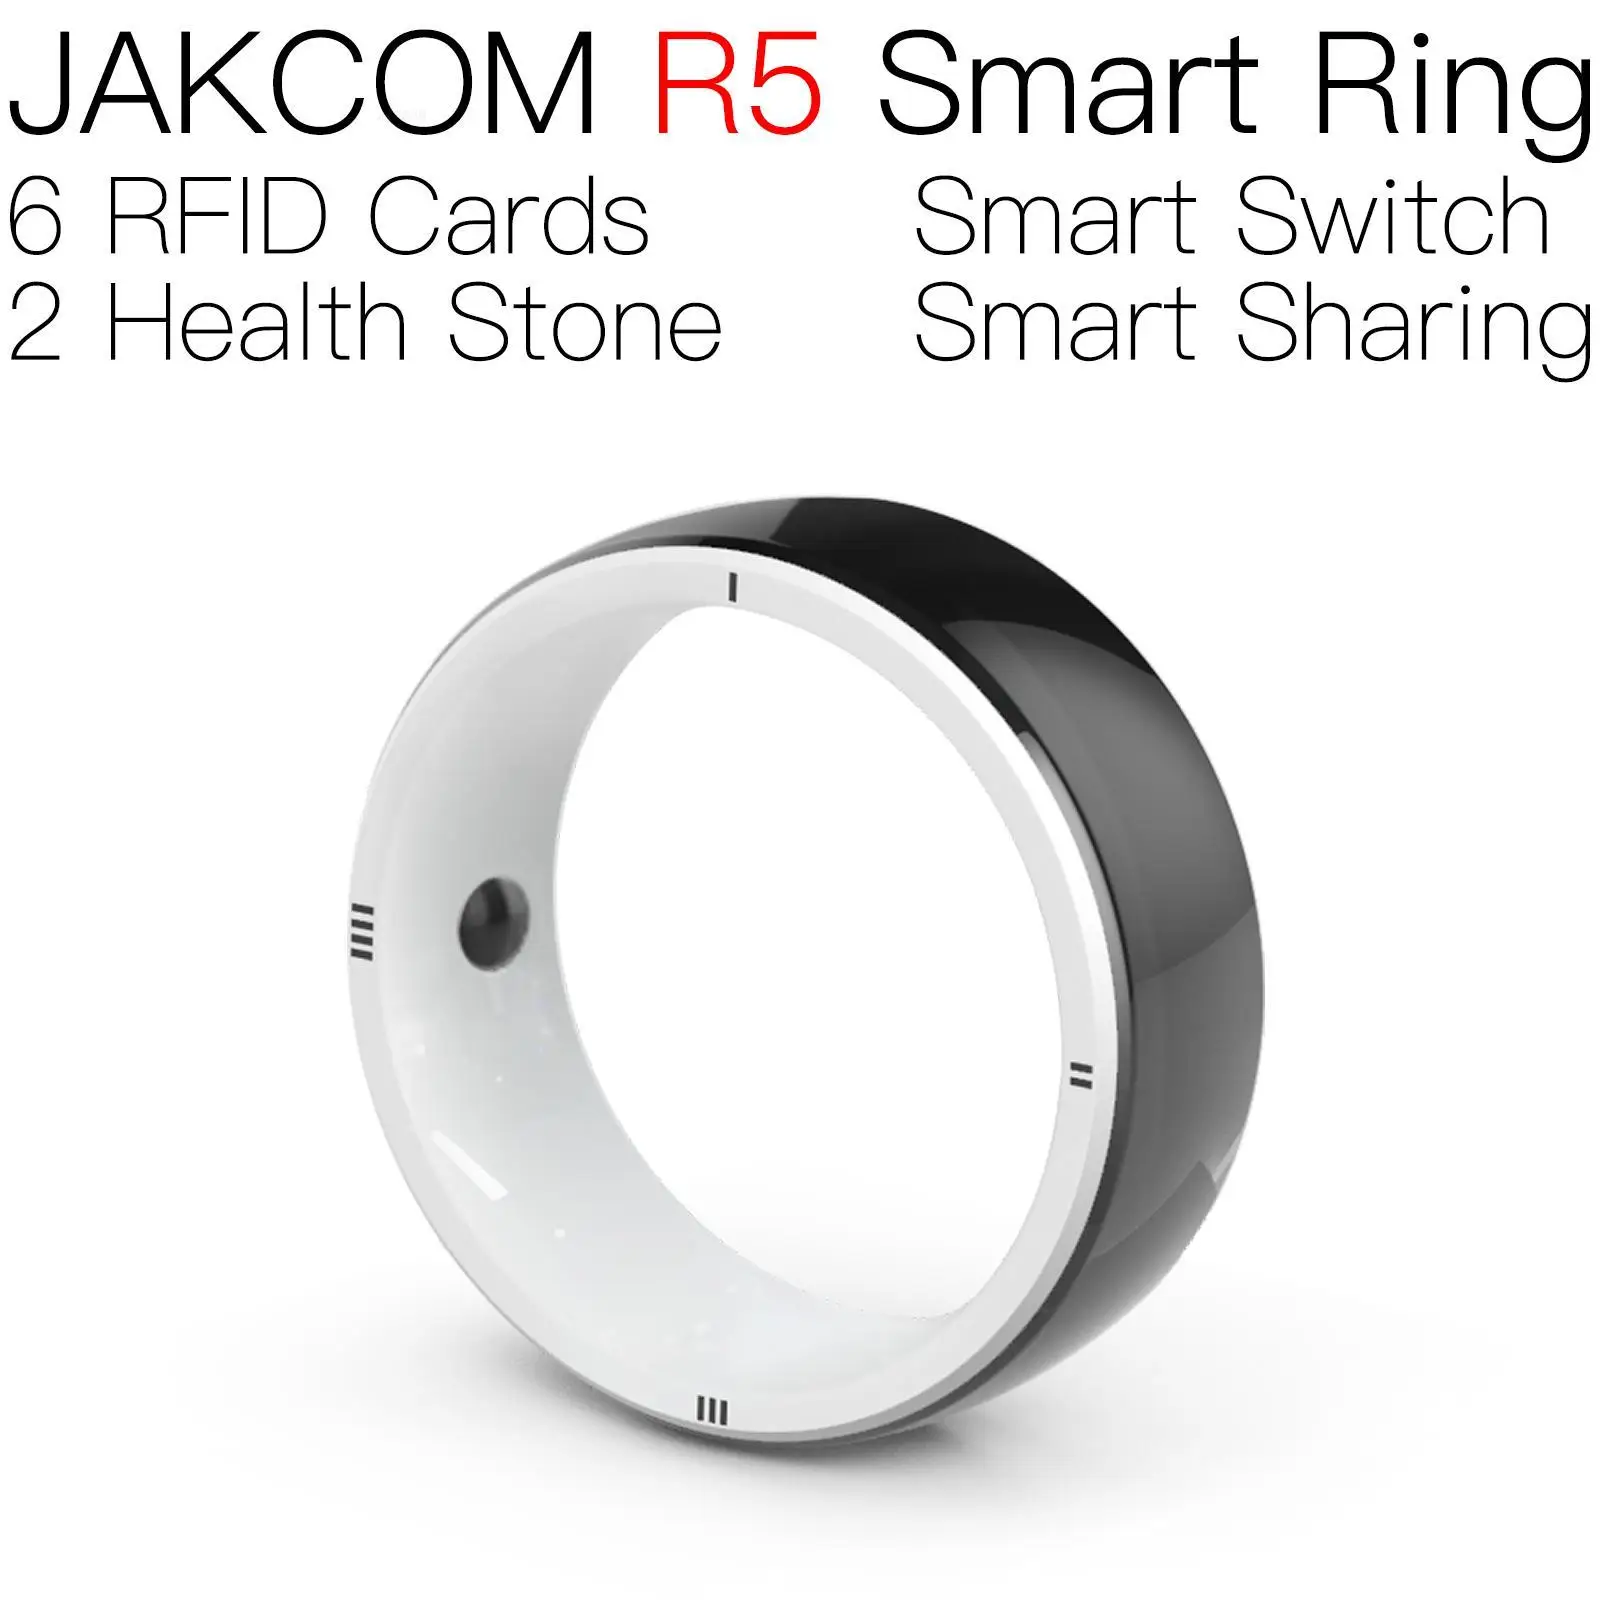 

Умное кольцо JAKCOM R5, лучше, чем мини-чип rfid, глобальная идентификация домашних животных, микрочип, метка для собаки, магазин kamelot ne5532 stiker